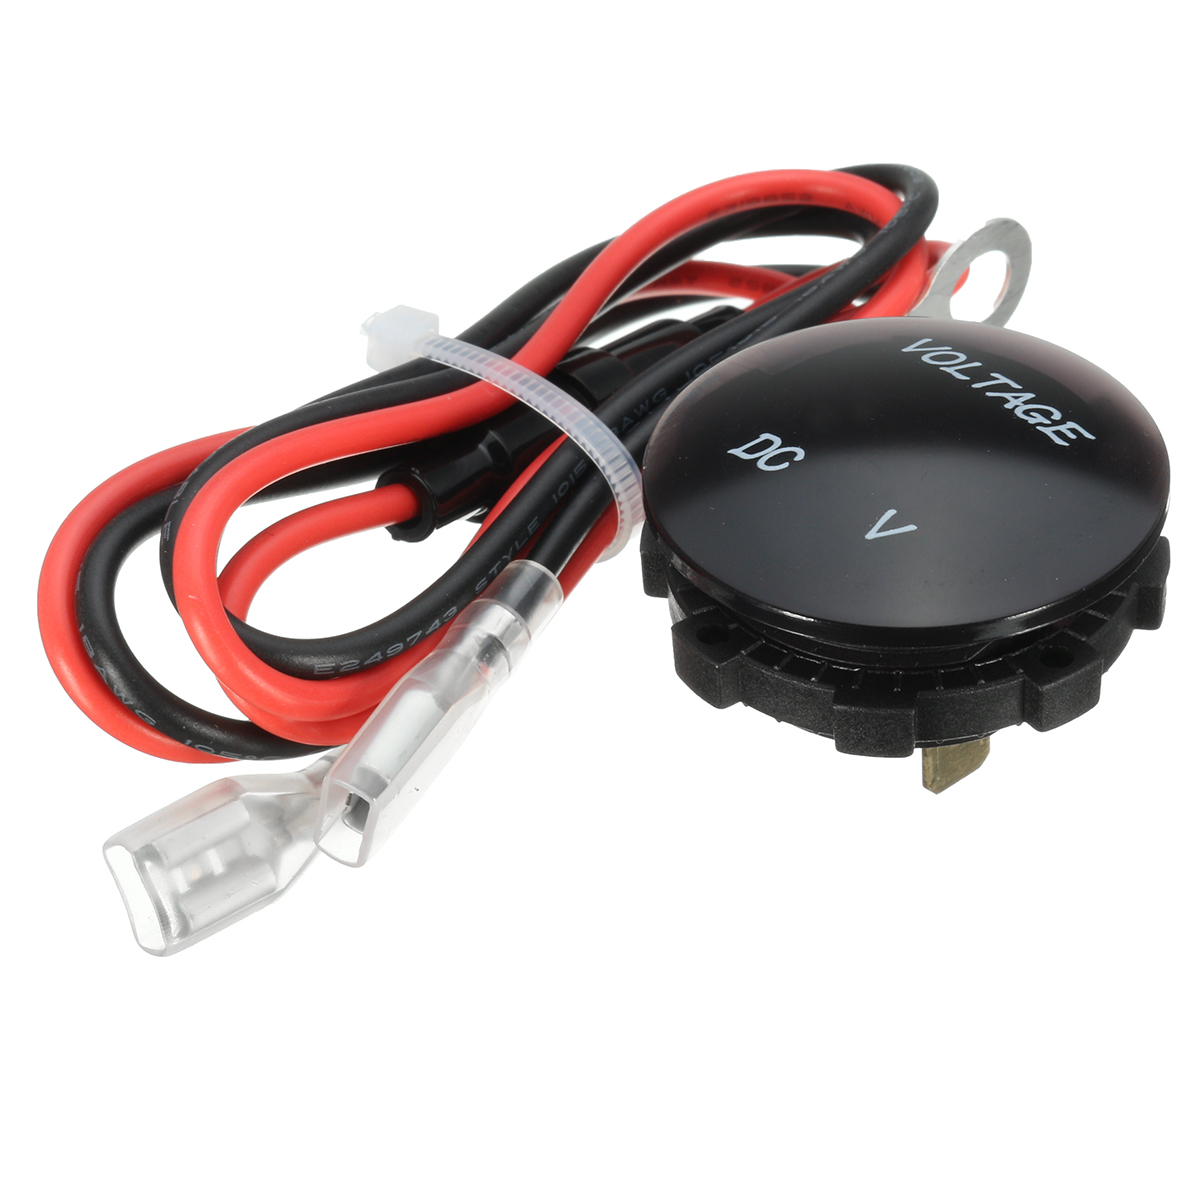 

12V-24V Car Motorcycle LED Digital Display DC Voltmeter Gauge Socket Waterproof